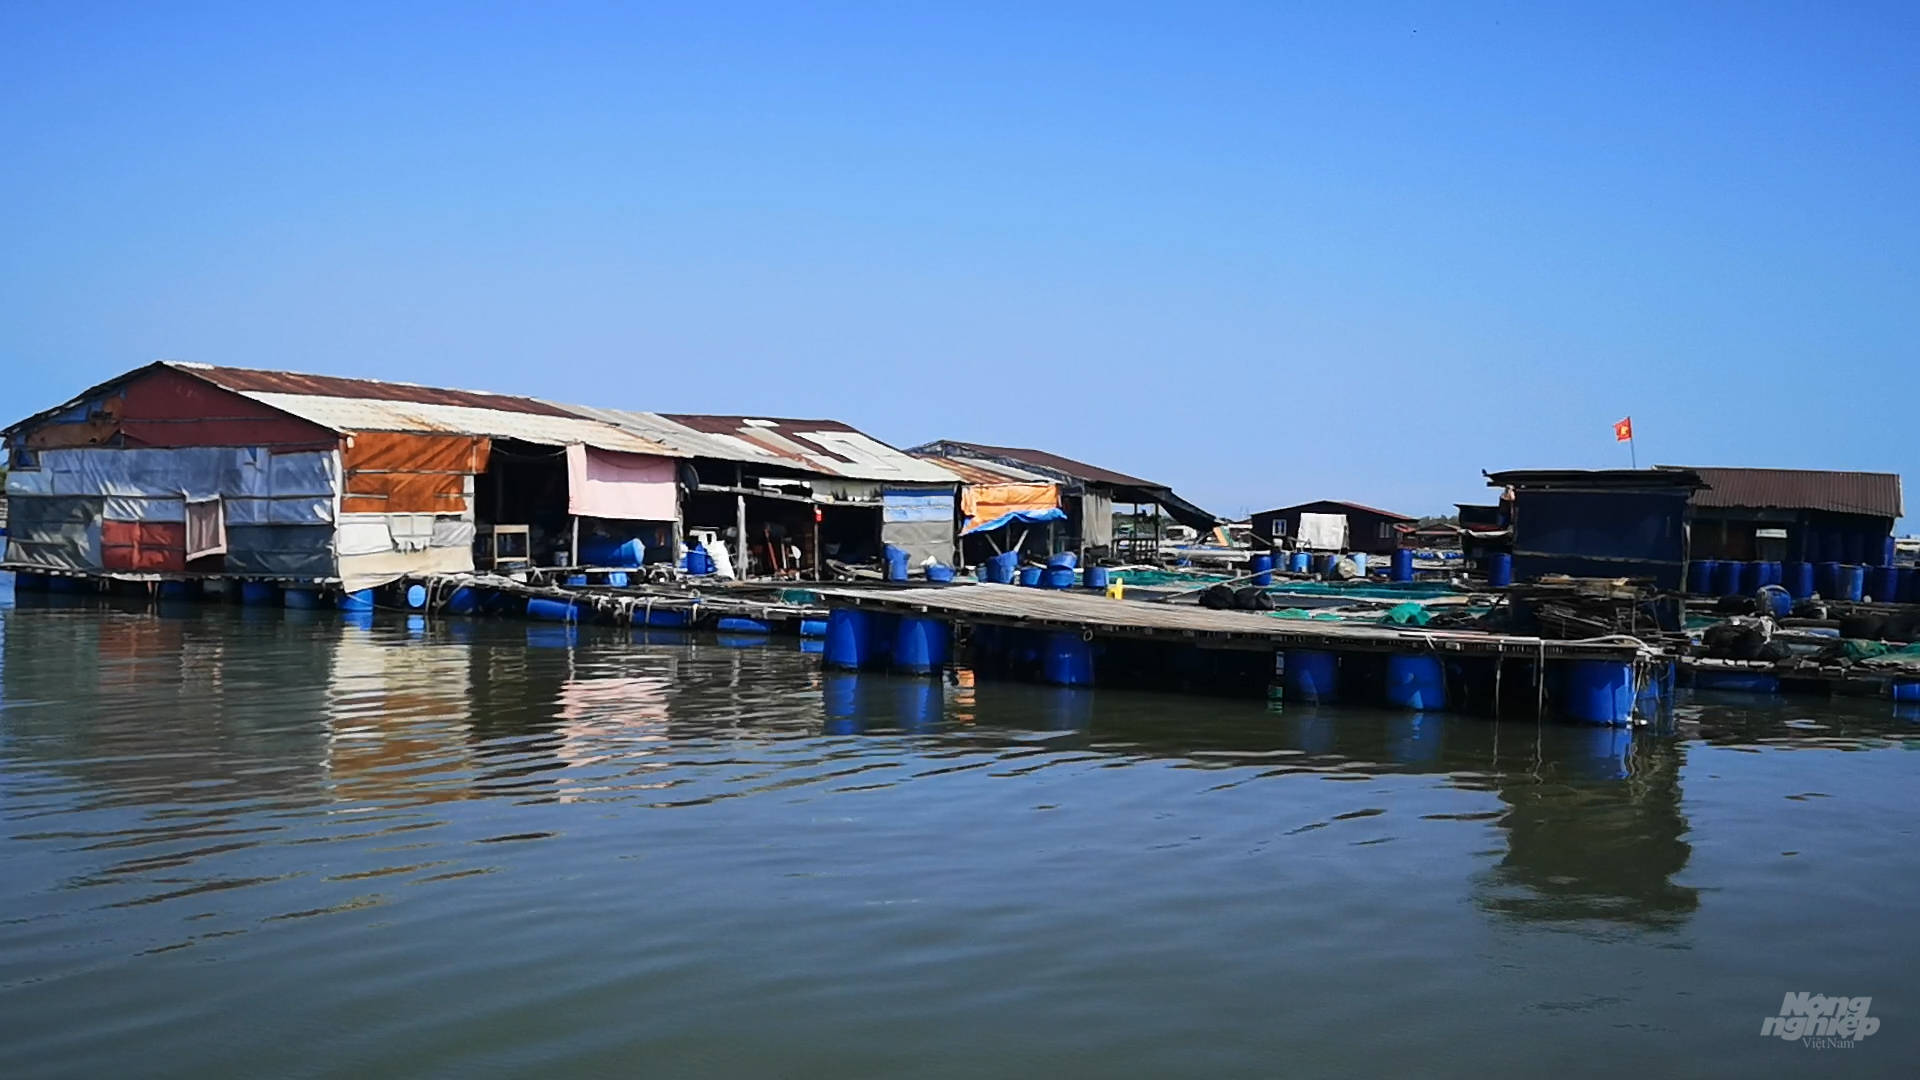 Đến đầu năm 2022, thành phố đã thực hiện xong việc giải tỏa các bè trên sông Dinh, tại phường Rạch Dừa và trả lại mặt nước. Ảnh: Minh Sáng.